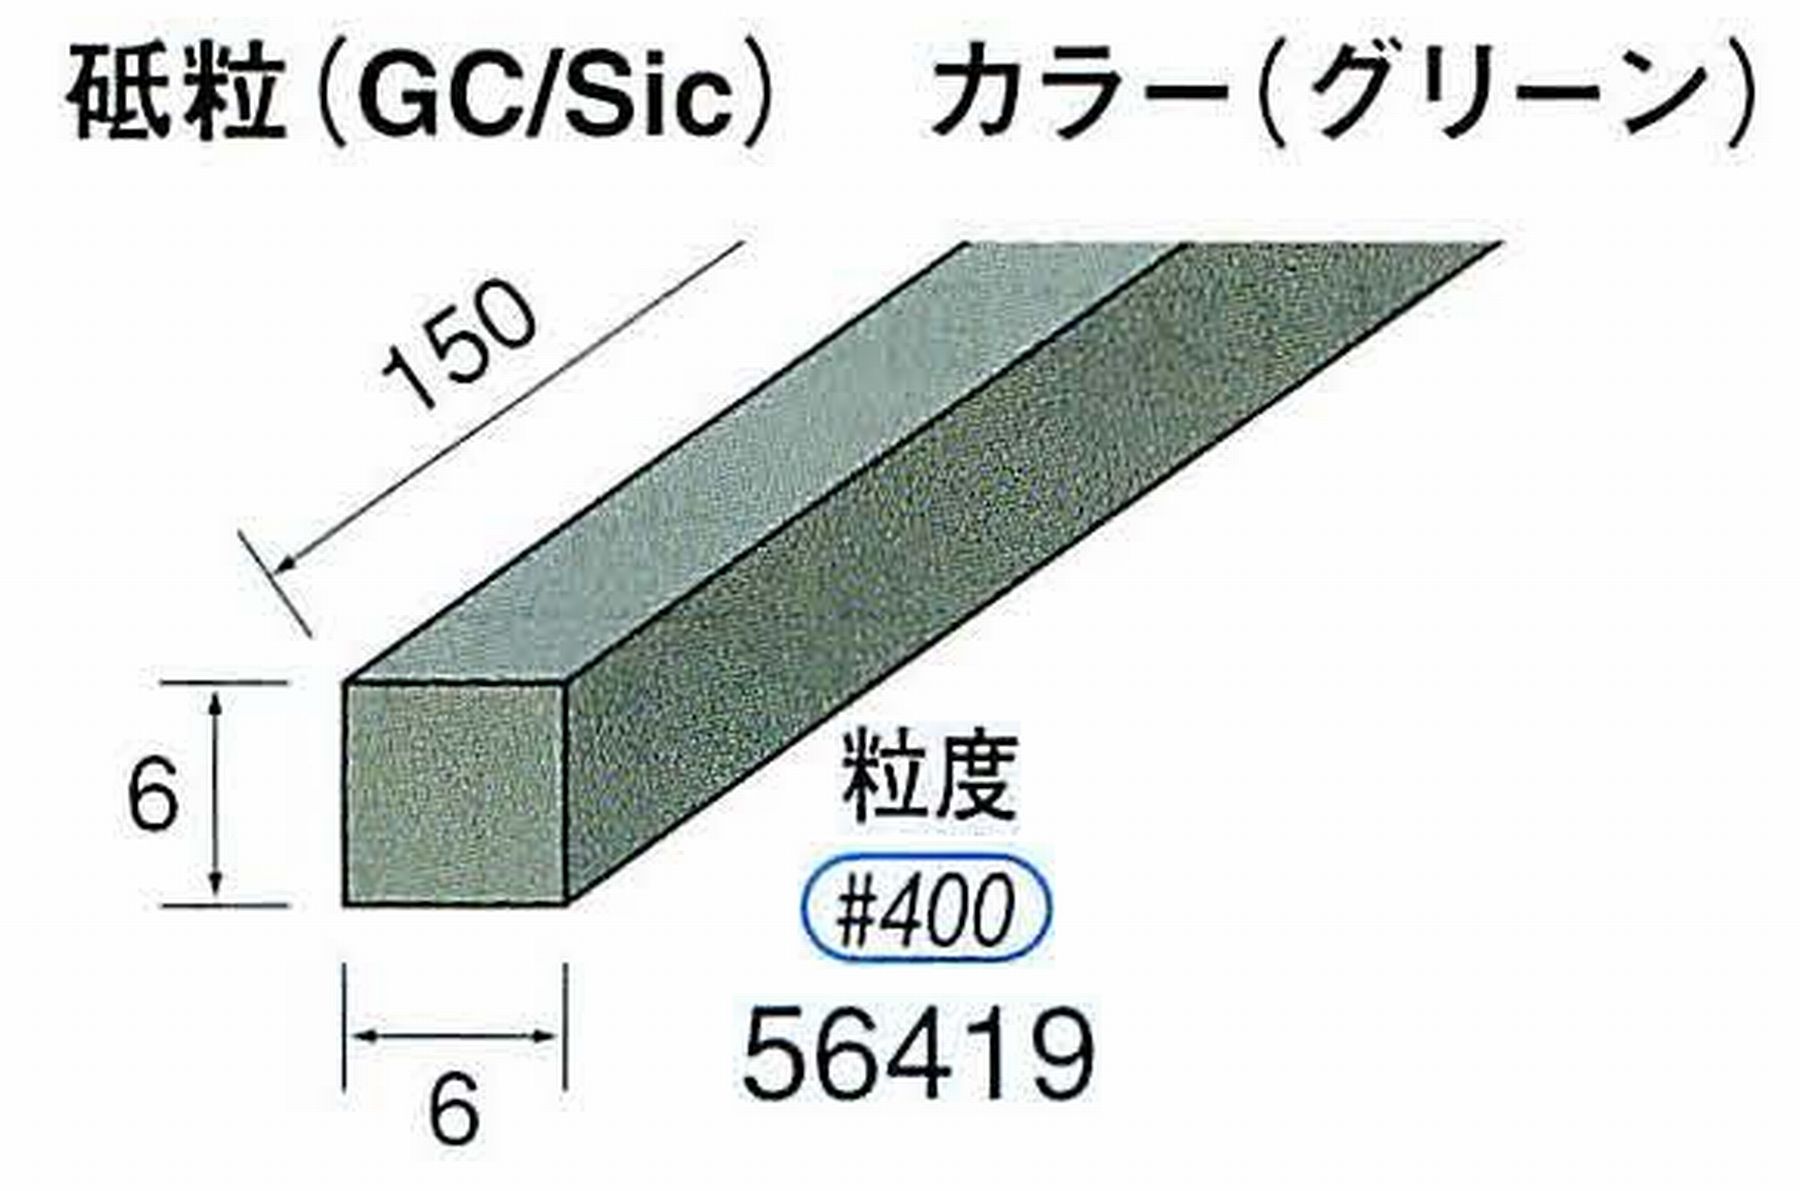 ナカニシ/NAKANISHI スティック砥石 グリーン・フィニッシュシリーズ 砥粒(GC/Sic) 56419